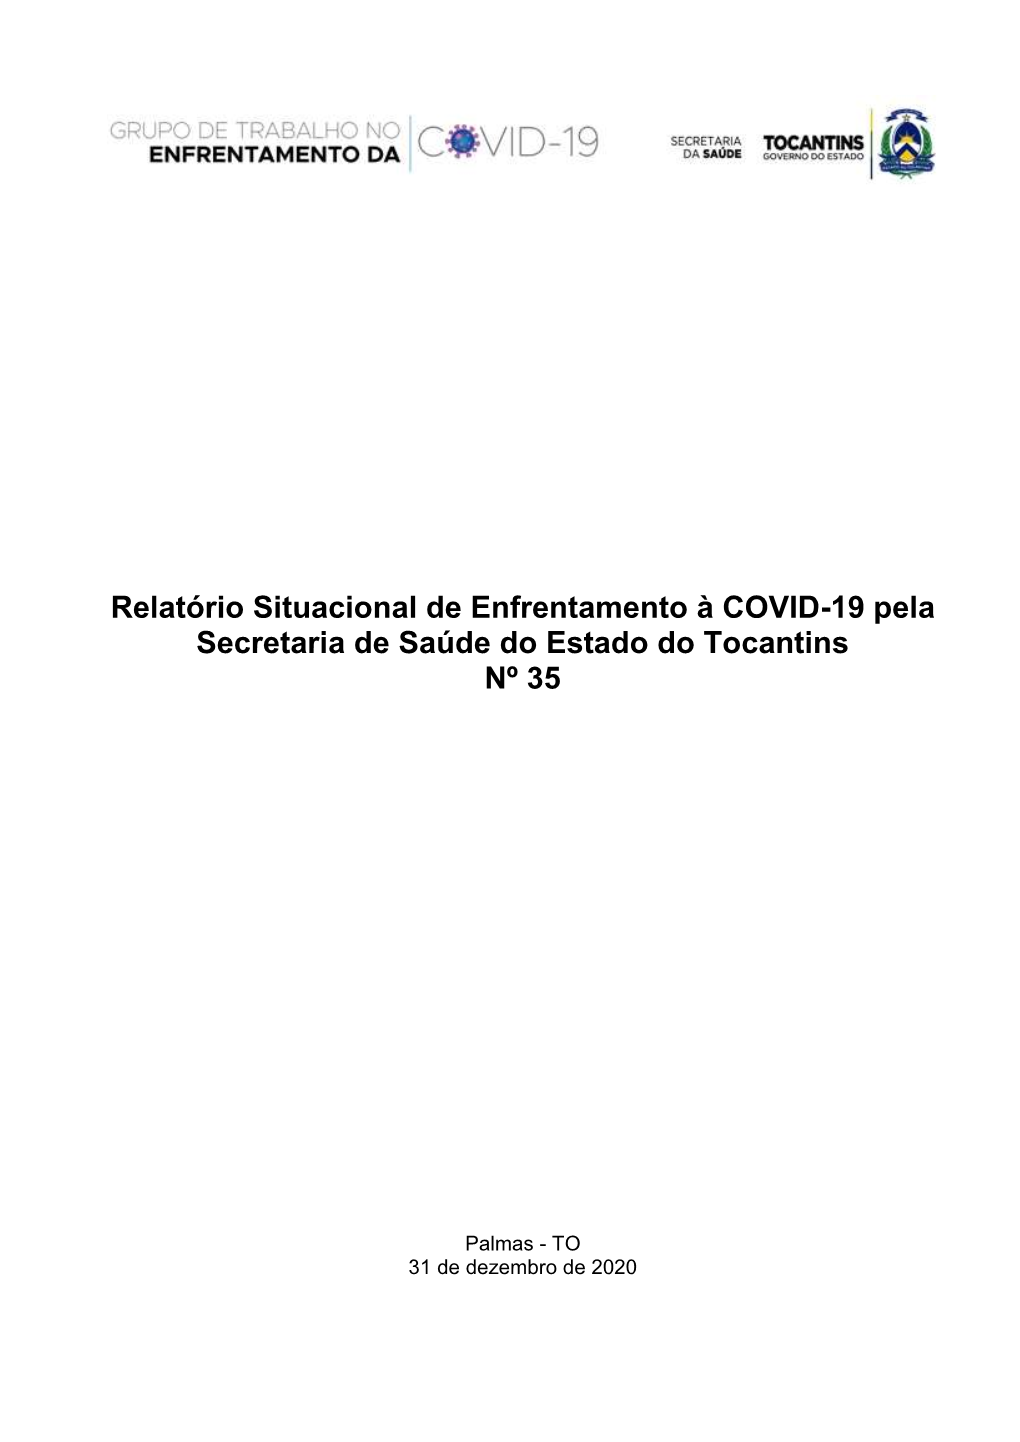 Relatório Situacional De Enfrentamento À COVID-19 Pela Secretaria De Saúde Do Estado Do Tocantins Nº 35